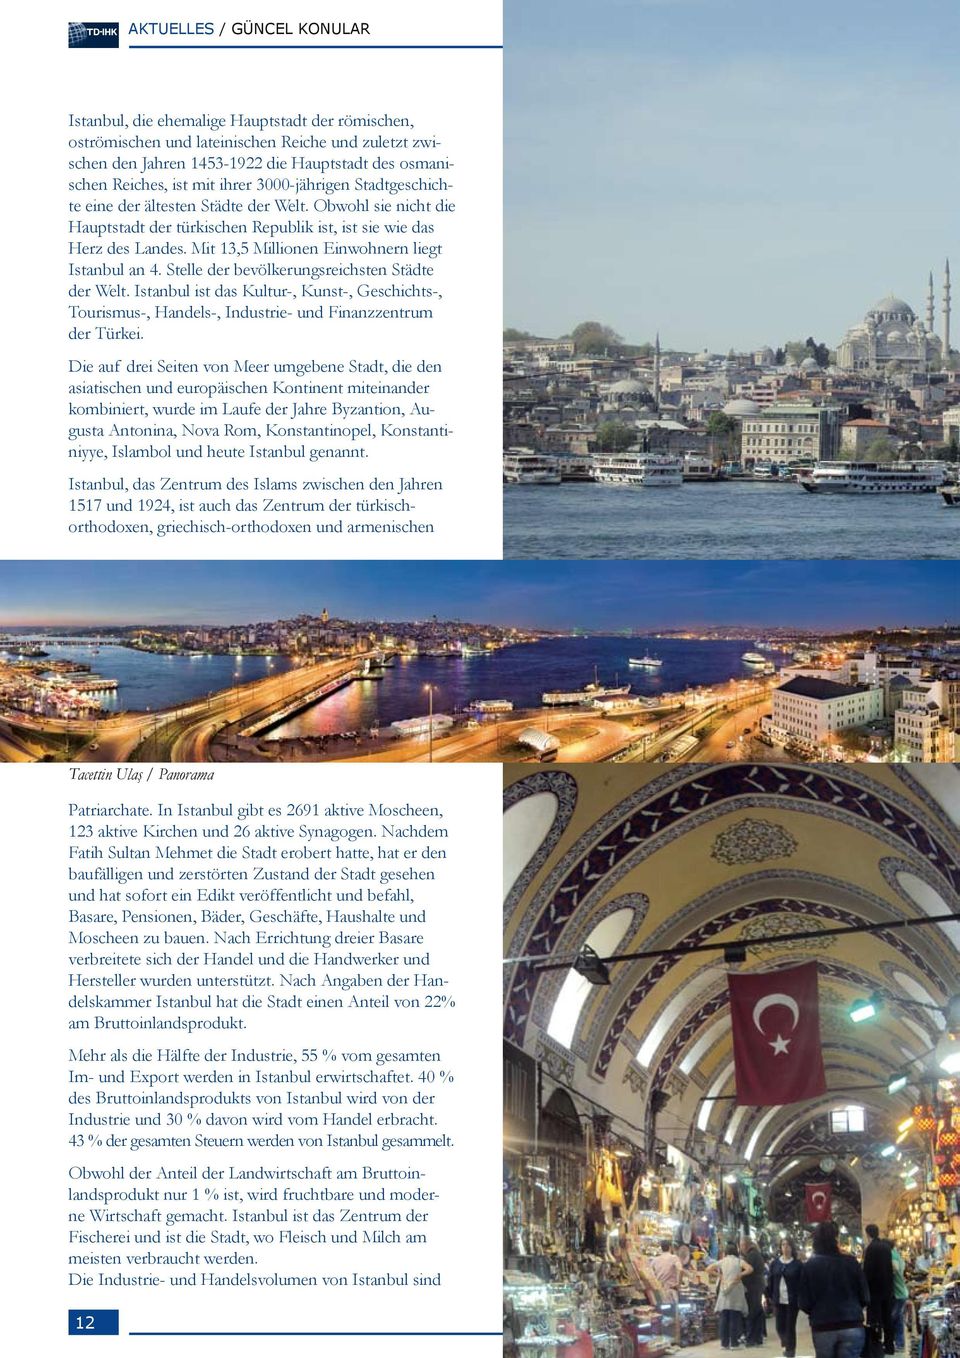 Mit 13,5 Millionen Einwohnern liegt Istanbul an 4. Stelle der bevölkerungsreichsten Städte der Welt.